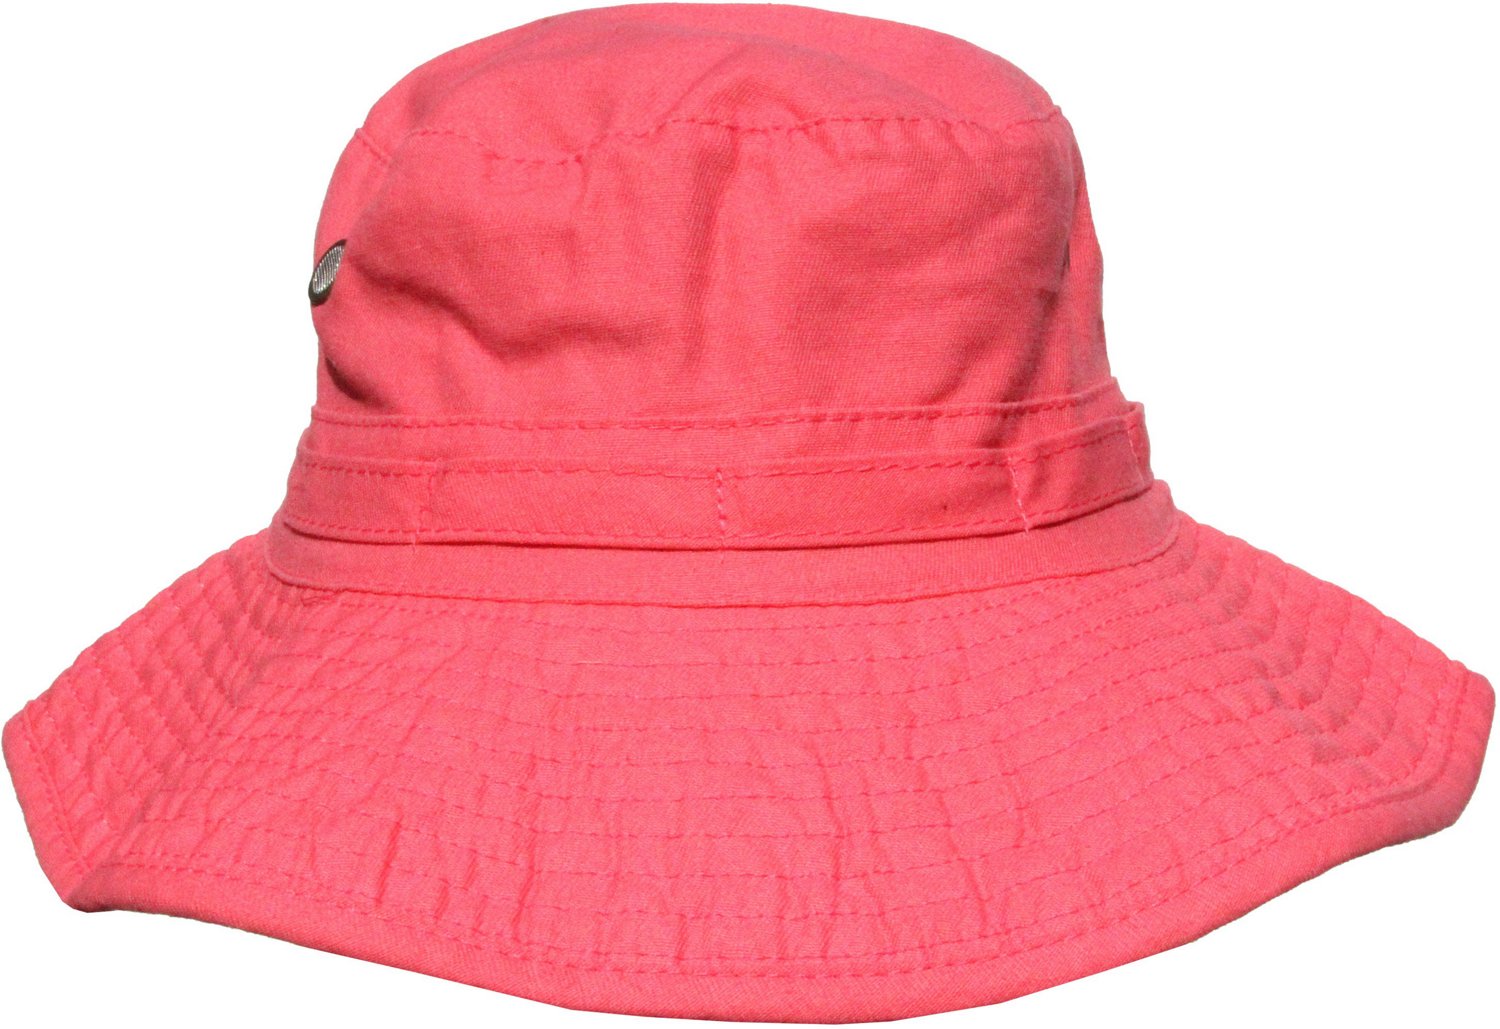 Magellan Outdoors Women's Bucket Hat